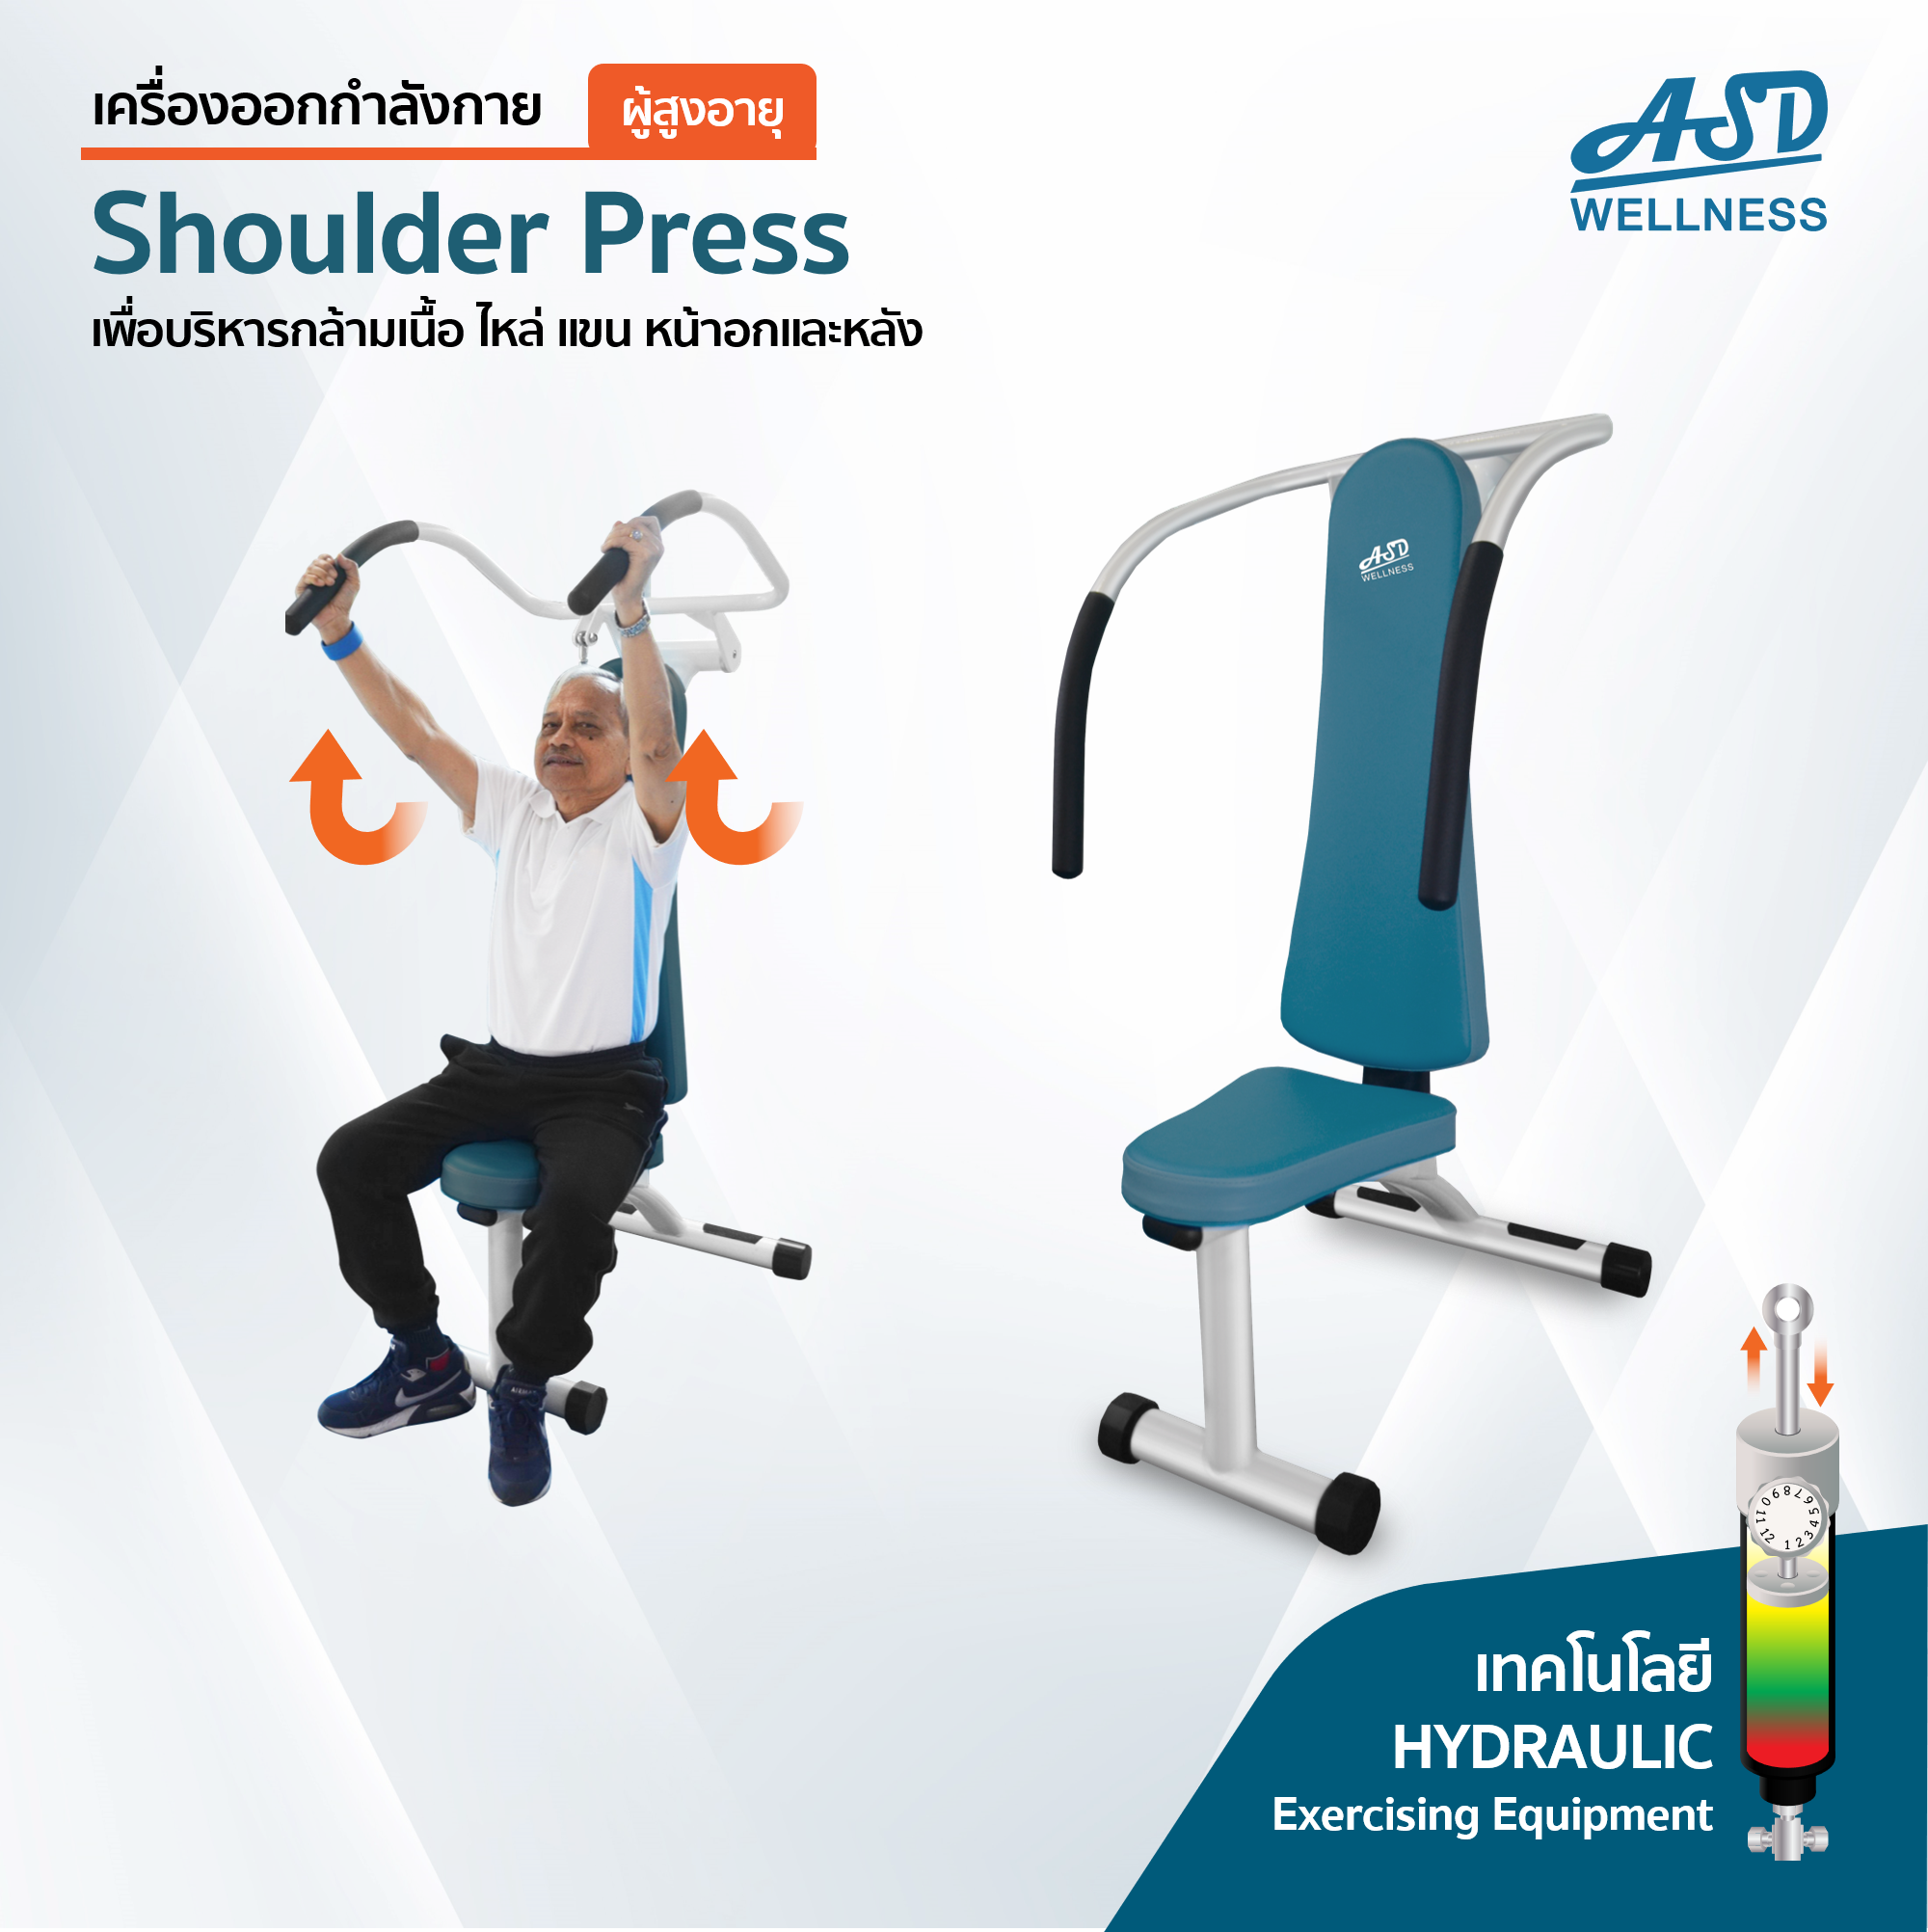 เครื่องออกกำลังกาย สำหรับผู้สูงอายุ เพื่อบริหารกล้ามเนื้อไหล่ แขน หน้าอกและหลัง Shoulder Press